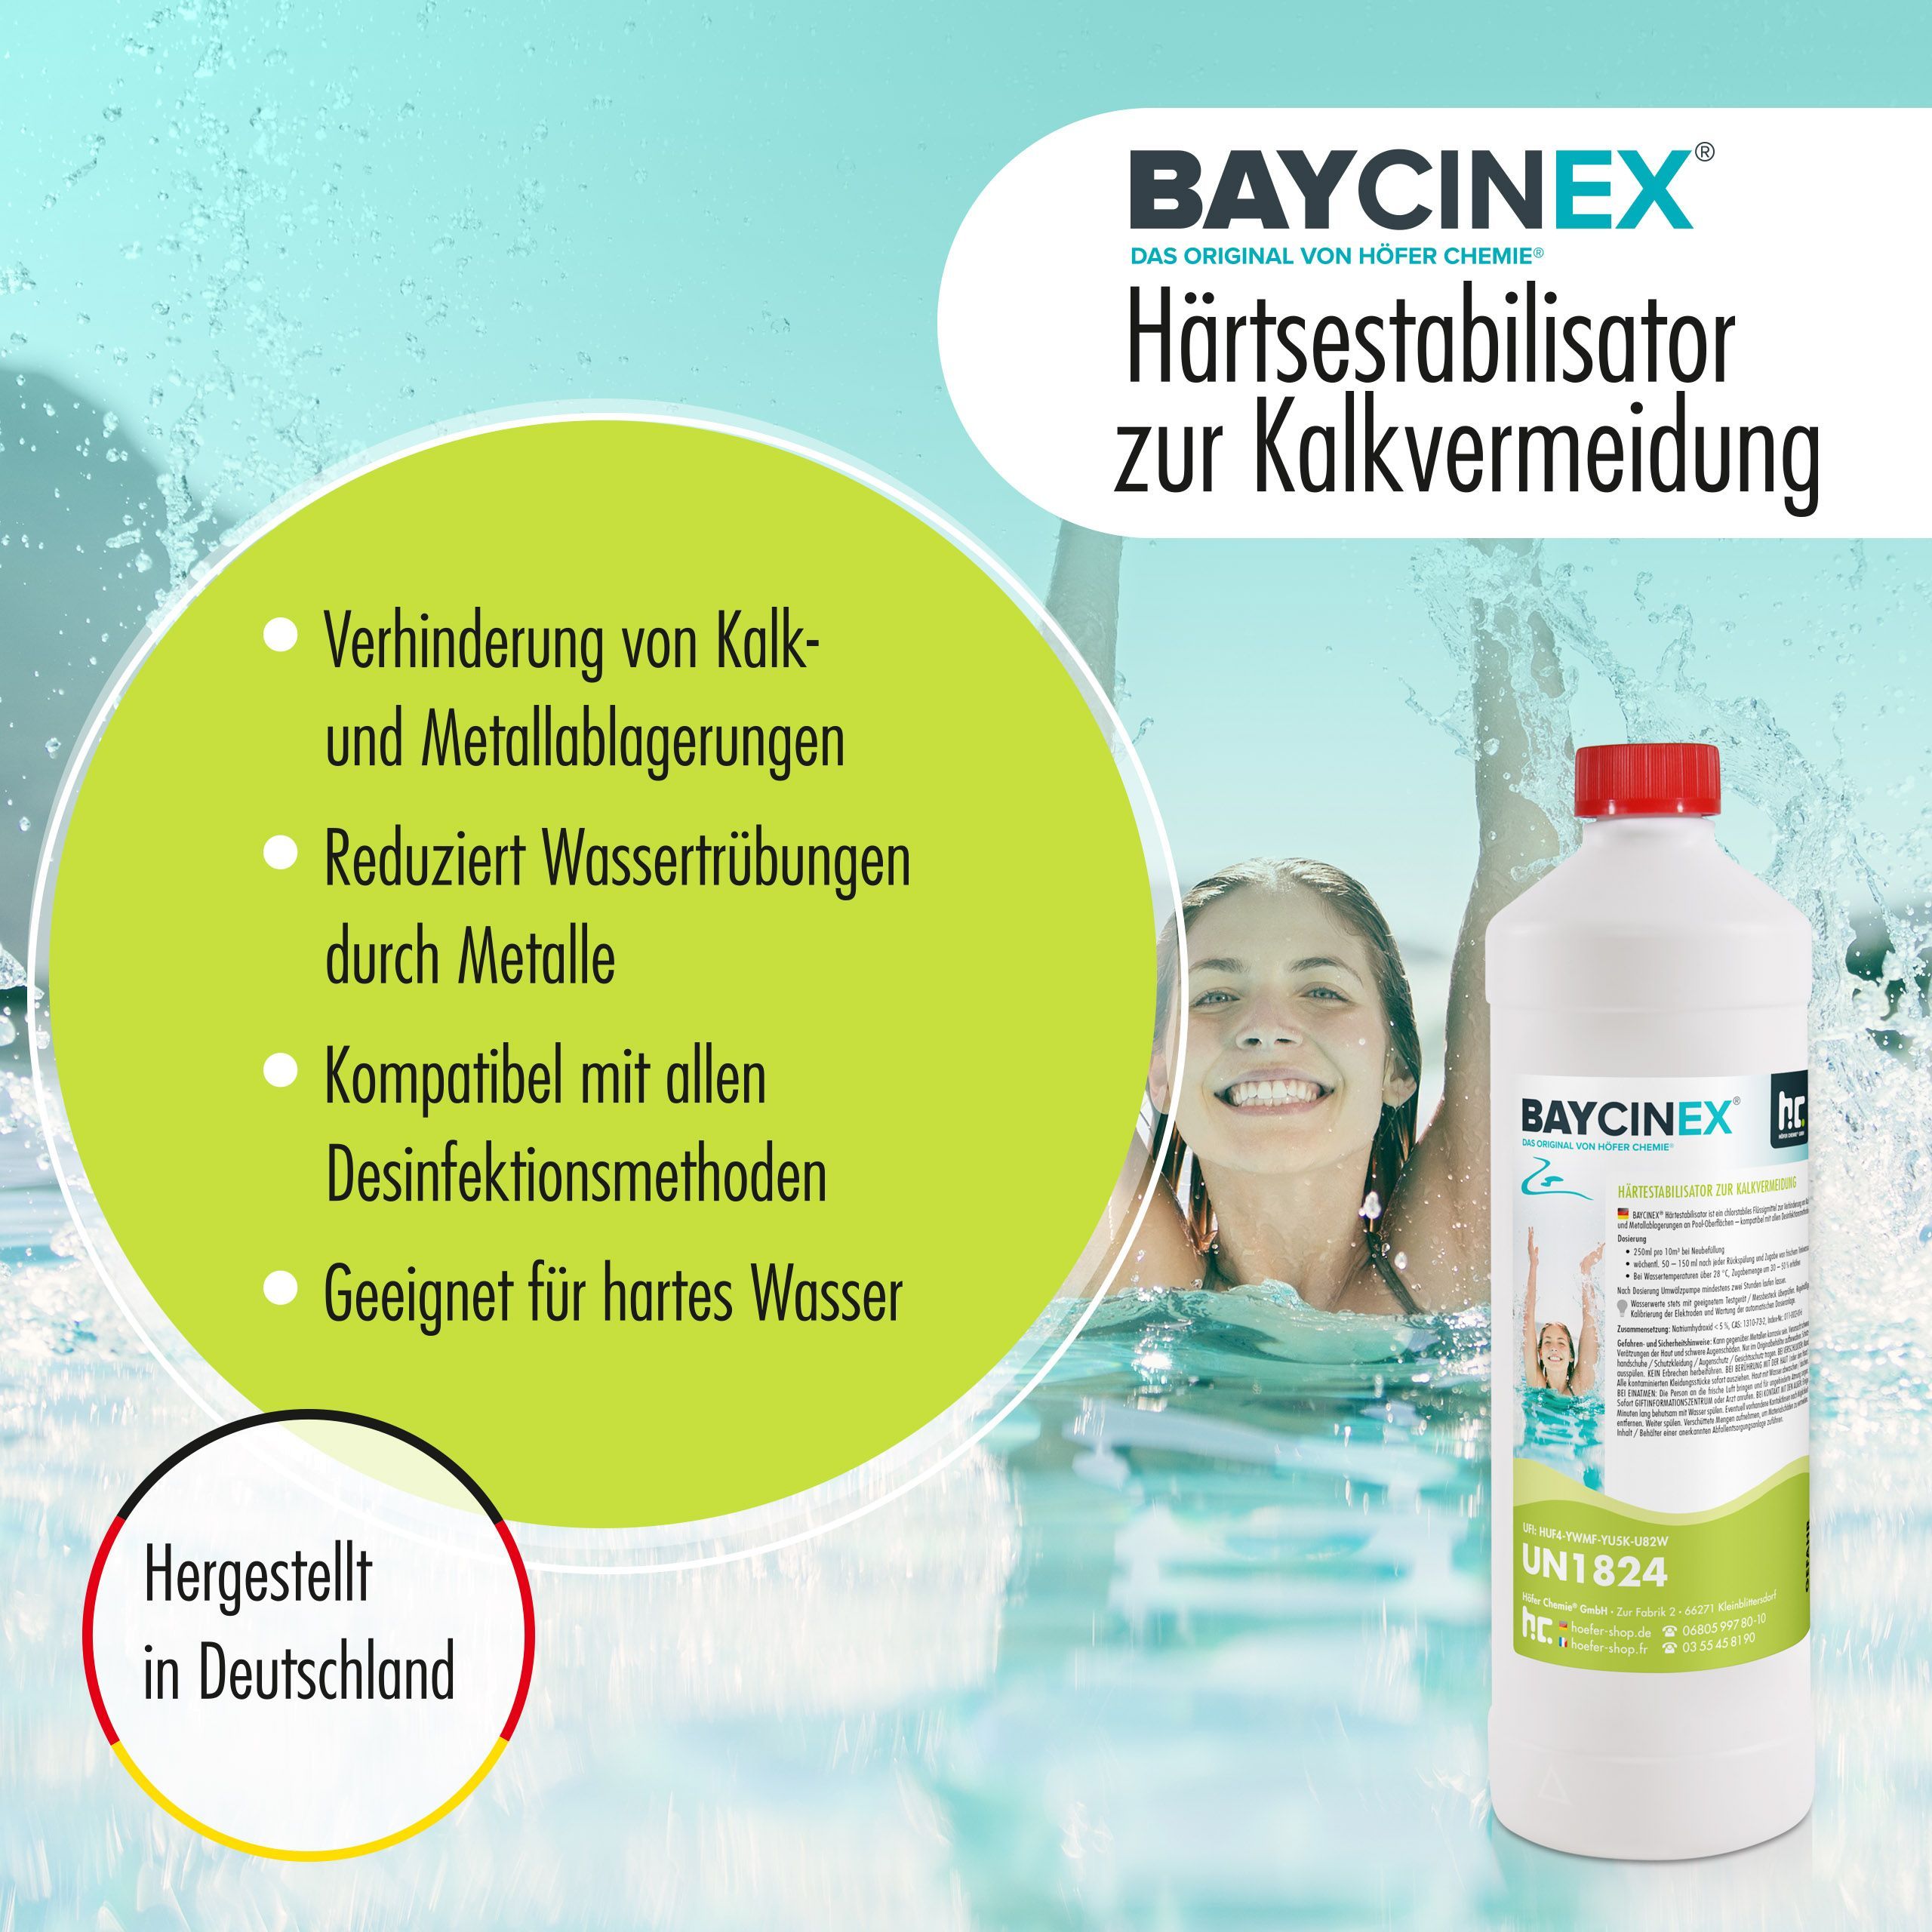 1 L BAYCINEX® Stabilisateur de dureté à action anti-calcaire